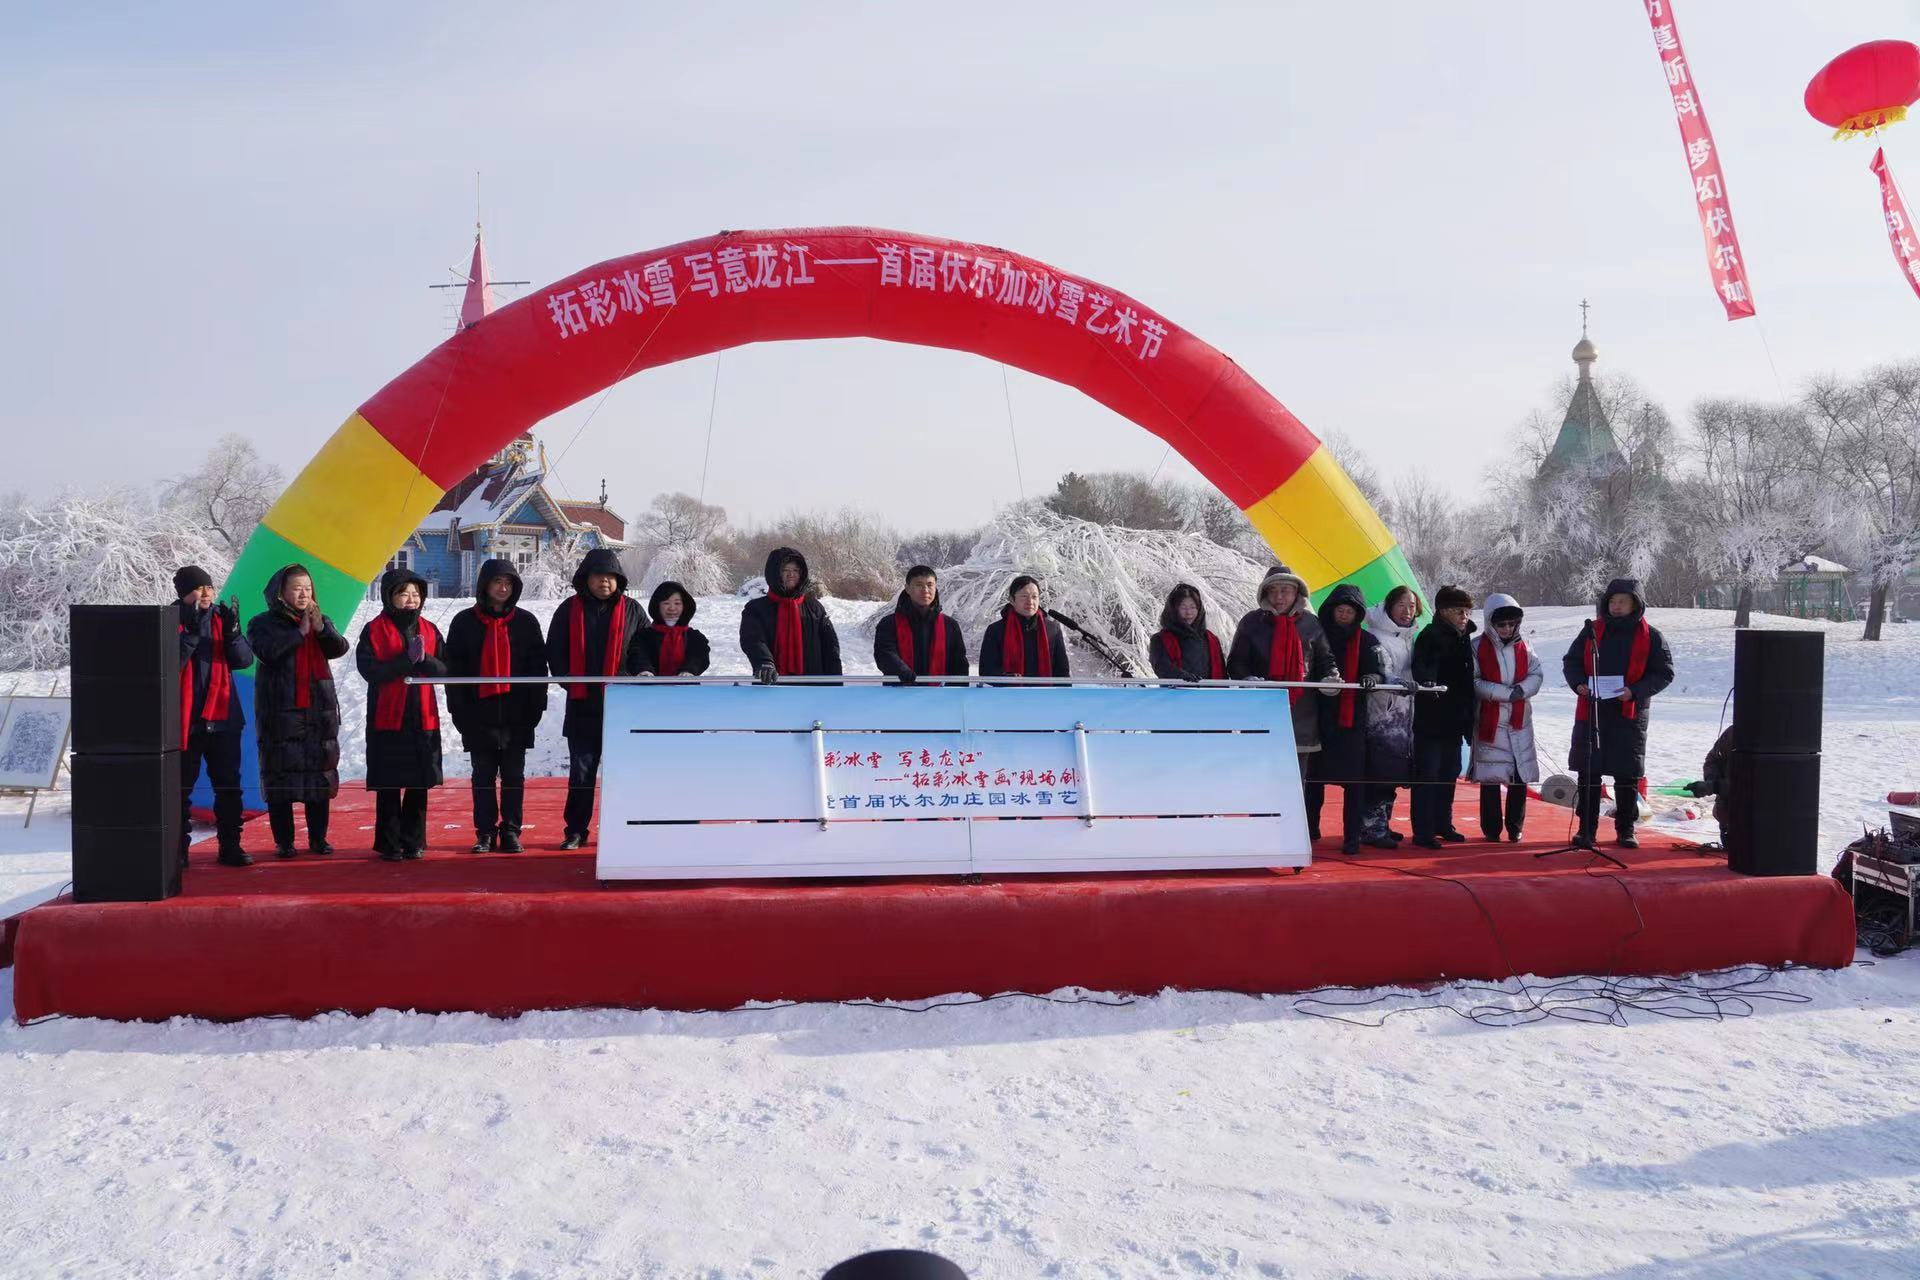 首屆中國·伏爾加莊園冰雪藝術節開幕 香坊區打造哈市冰雪旅遊新版圖